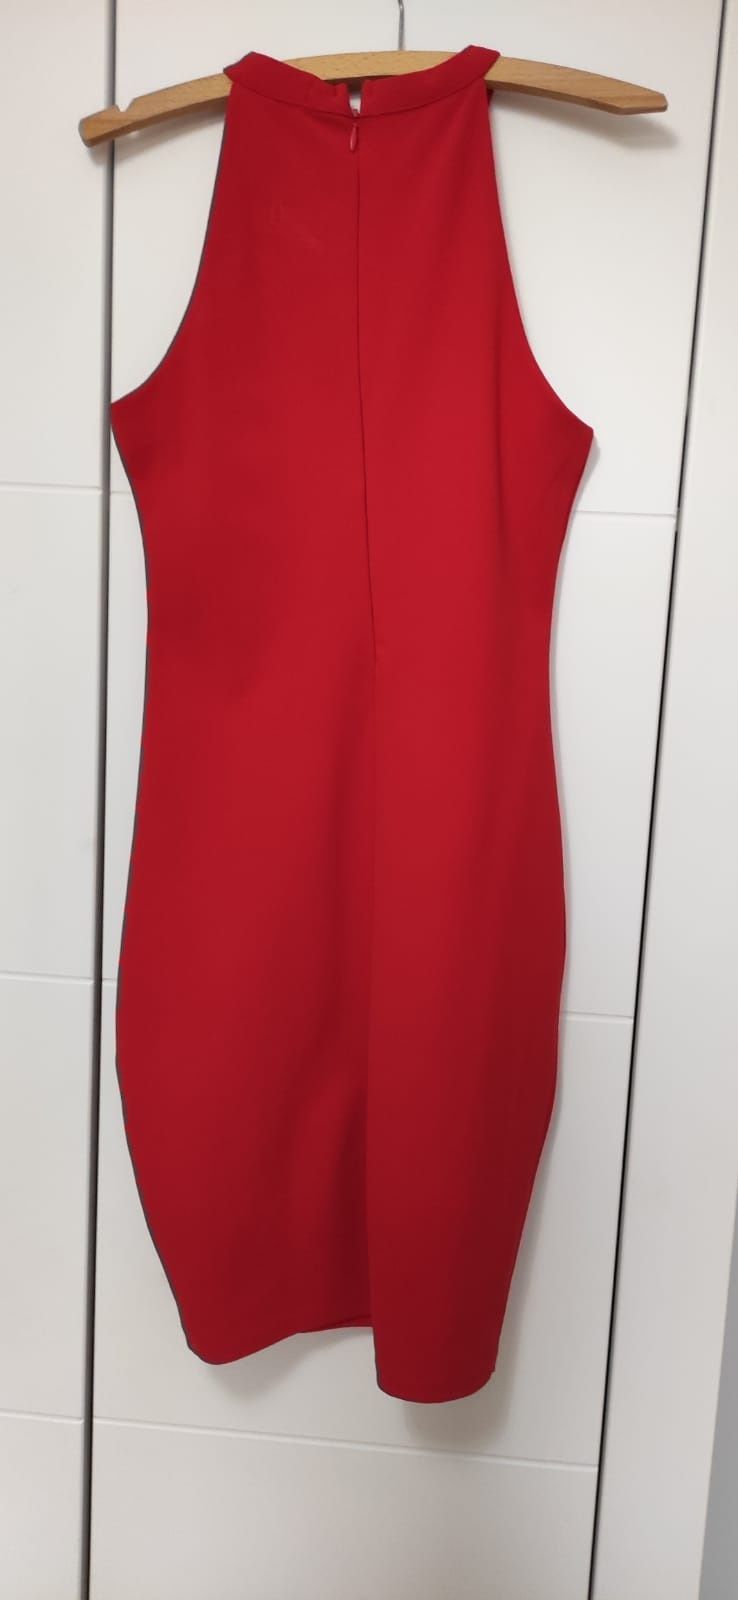 Dopasowana czerwona sukienka